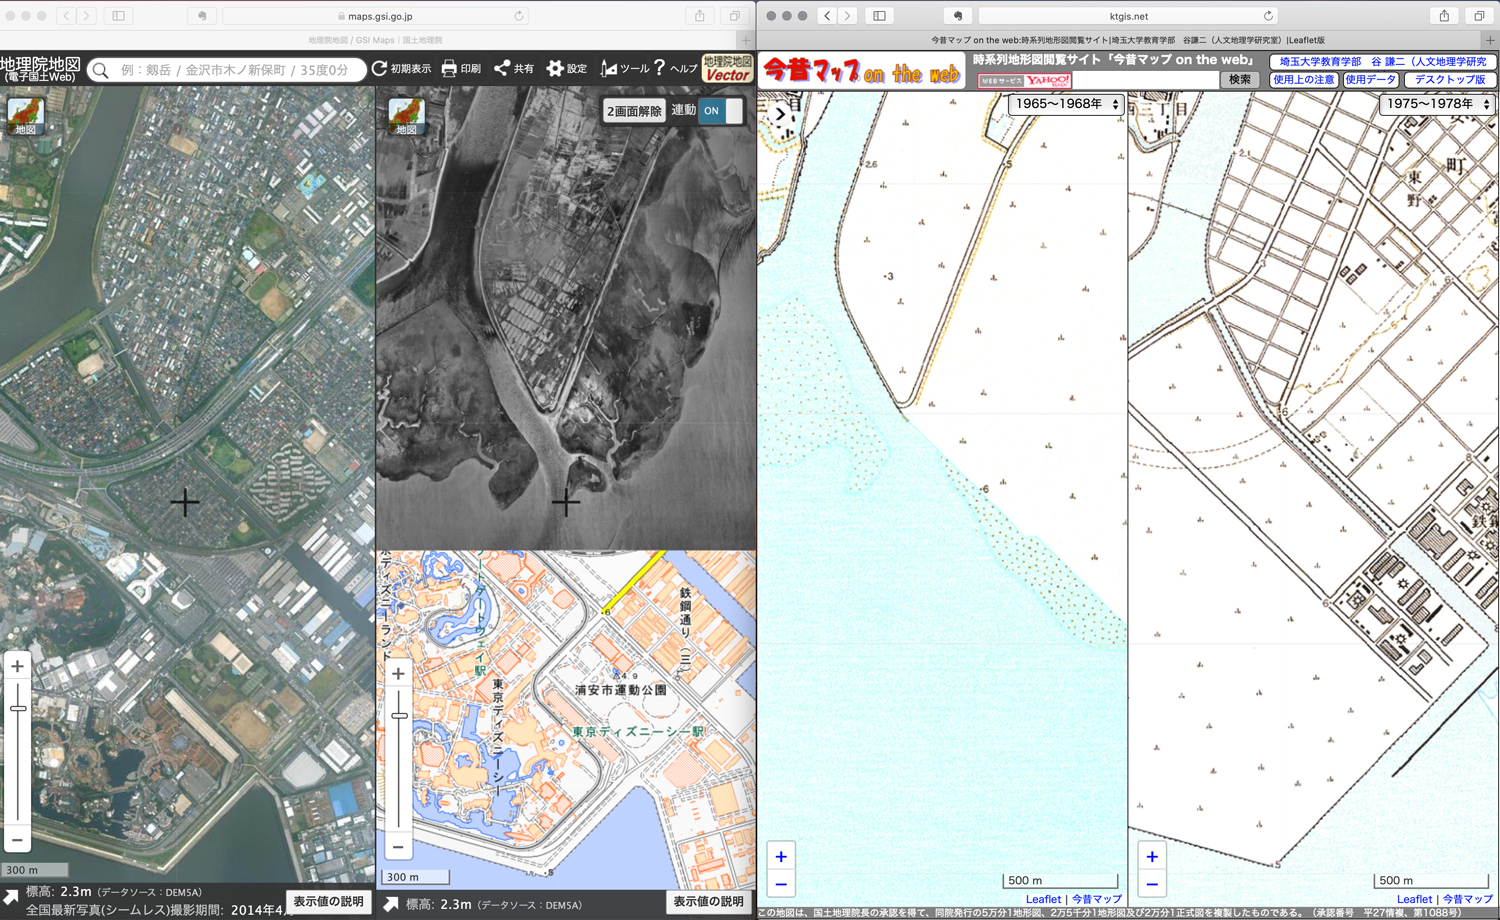 地理院地図の写真と今昔マップの地形図を比較